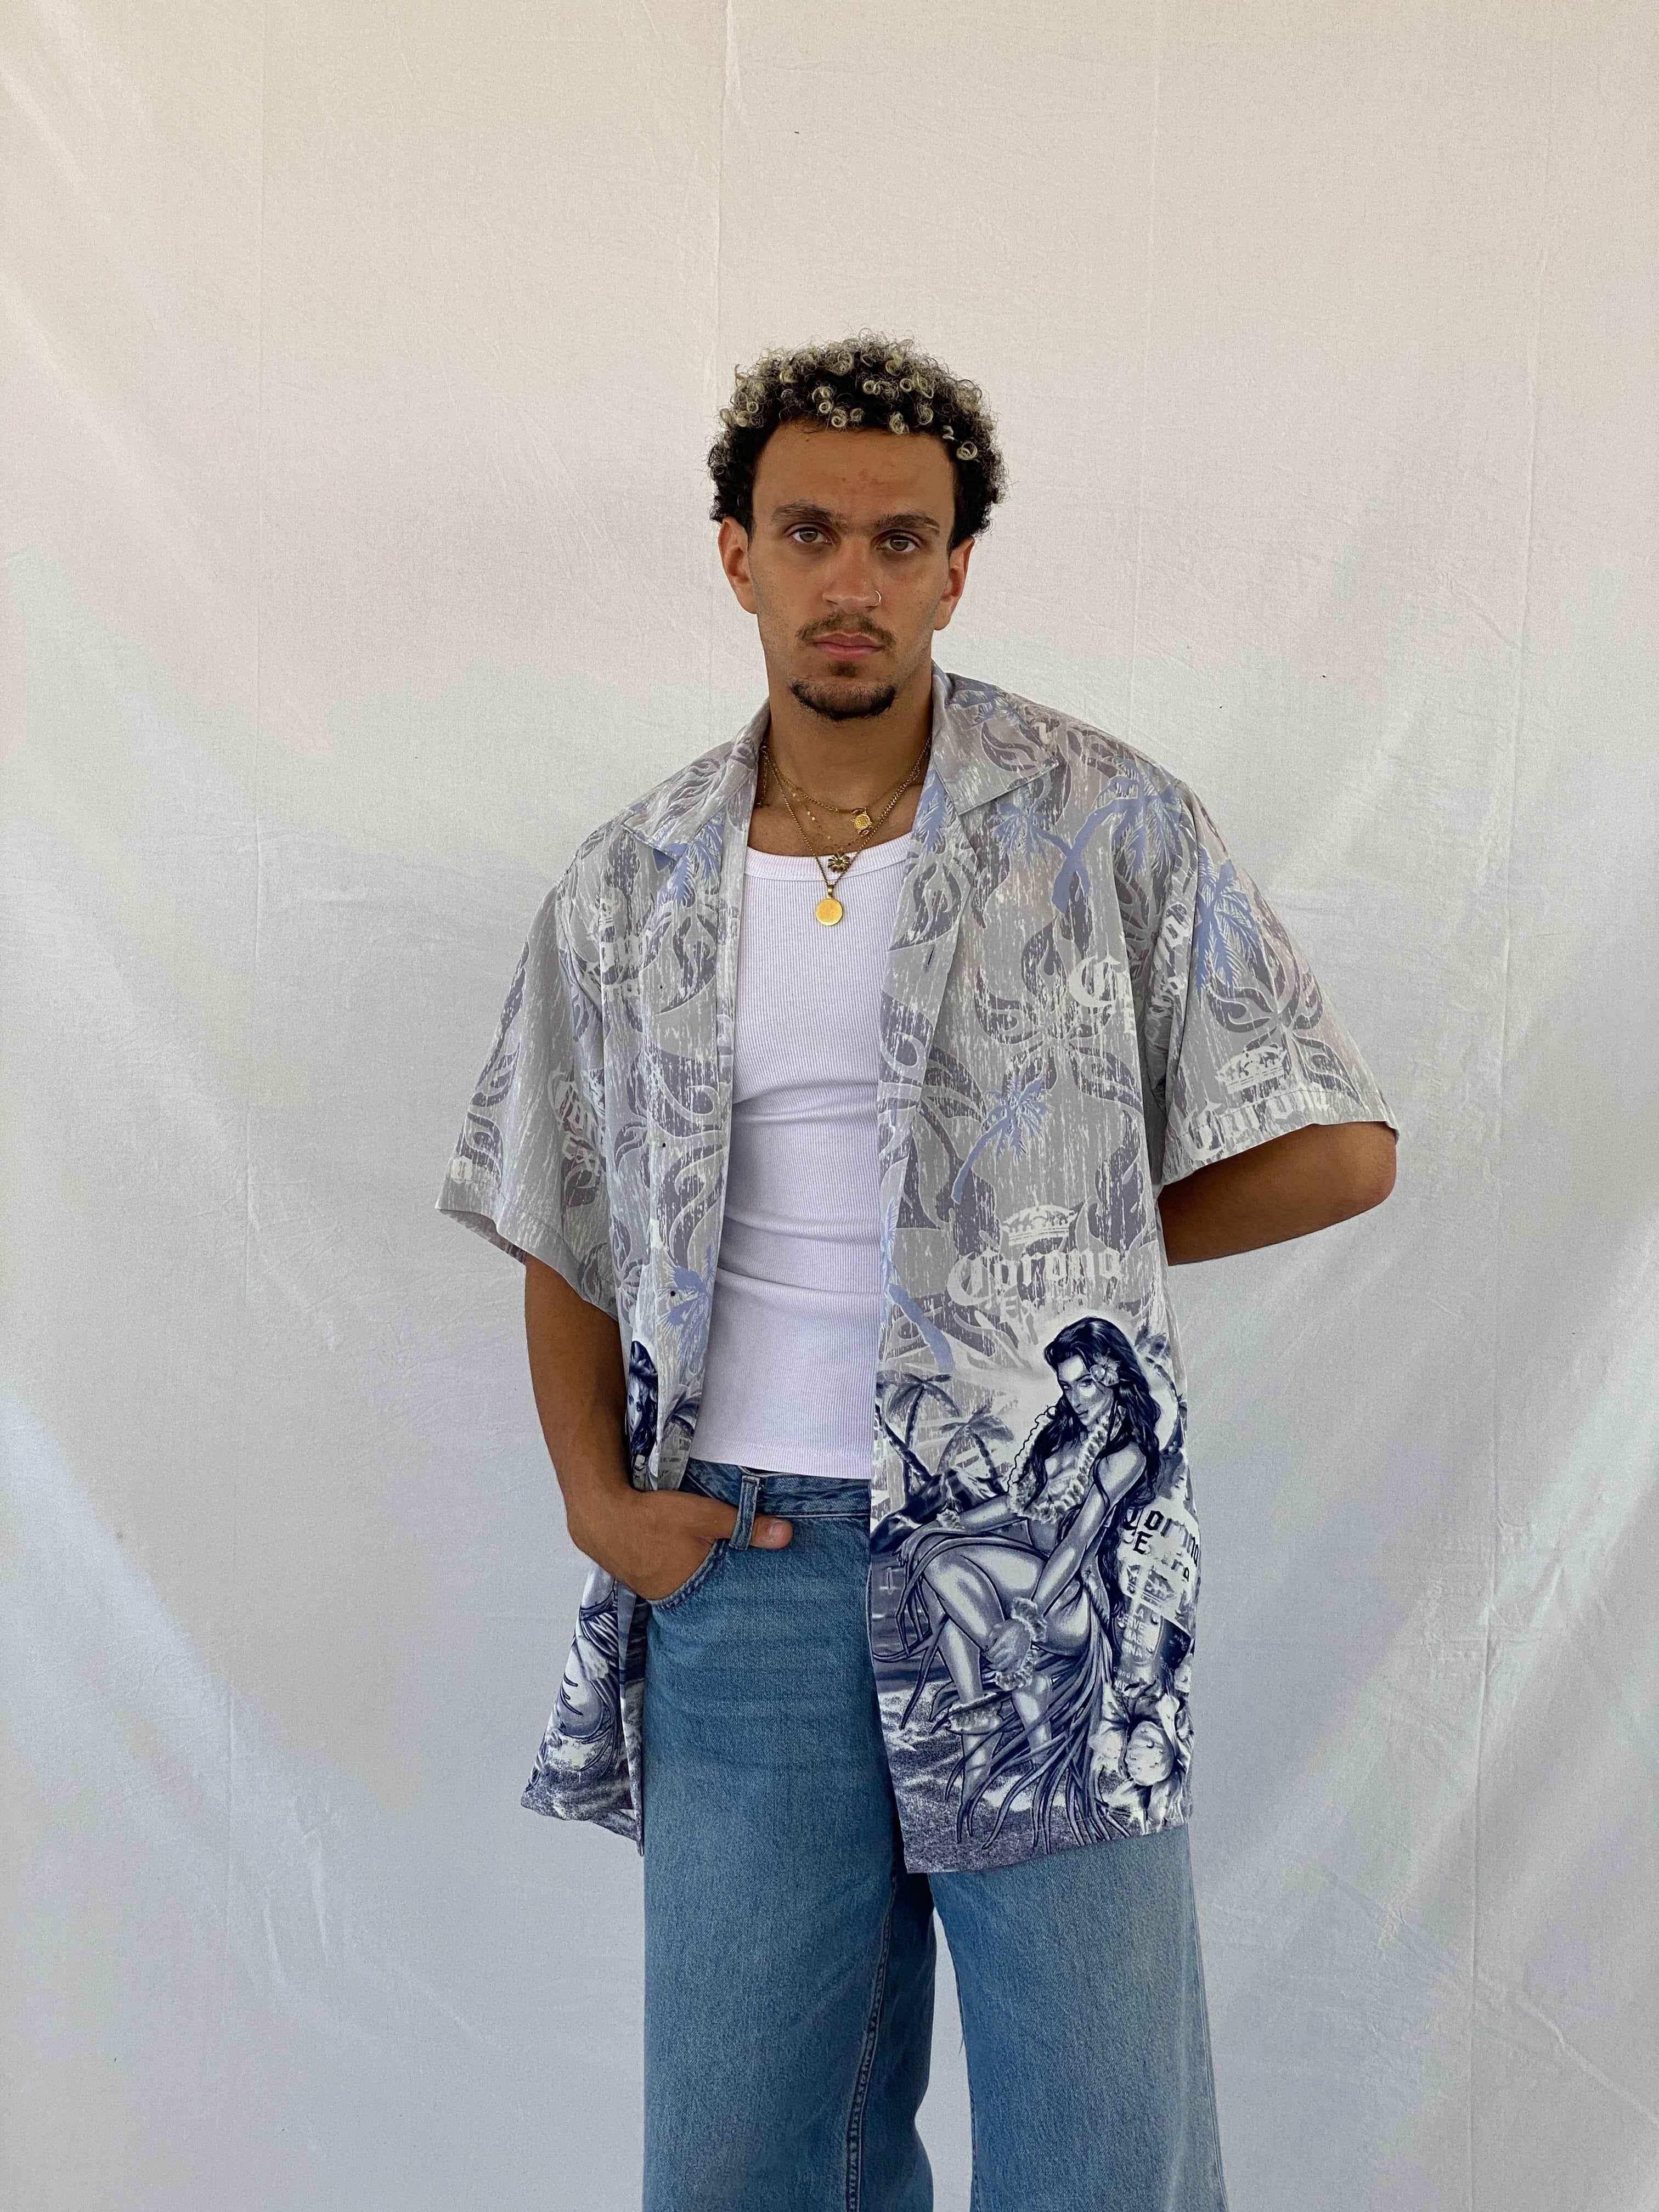 Corona Beer Hawaiian Shirt - Balagan Vintage Half Sleeve Shirt 00s, 90s, Abdullah, half sleeve shirt